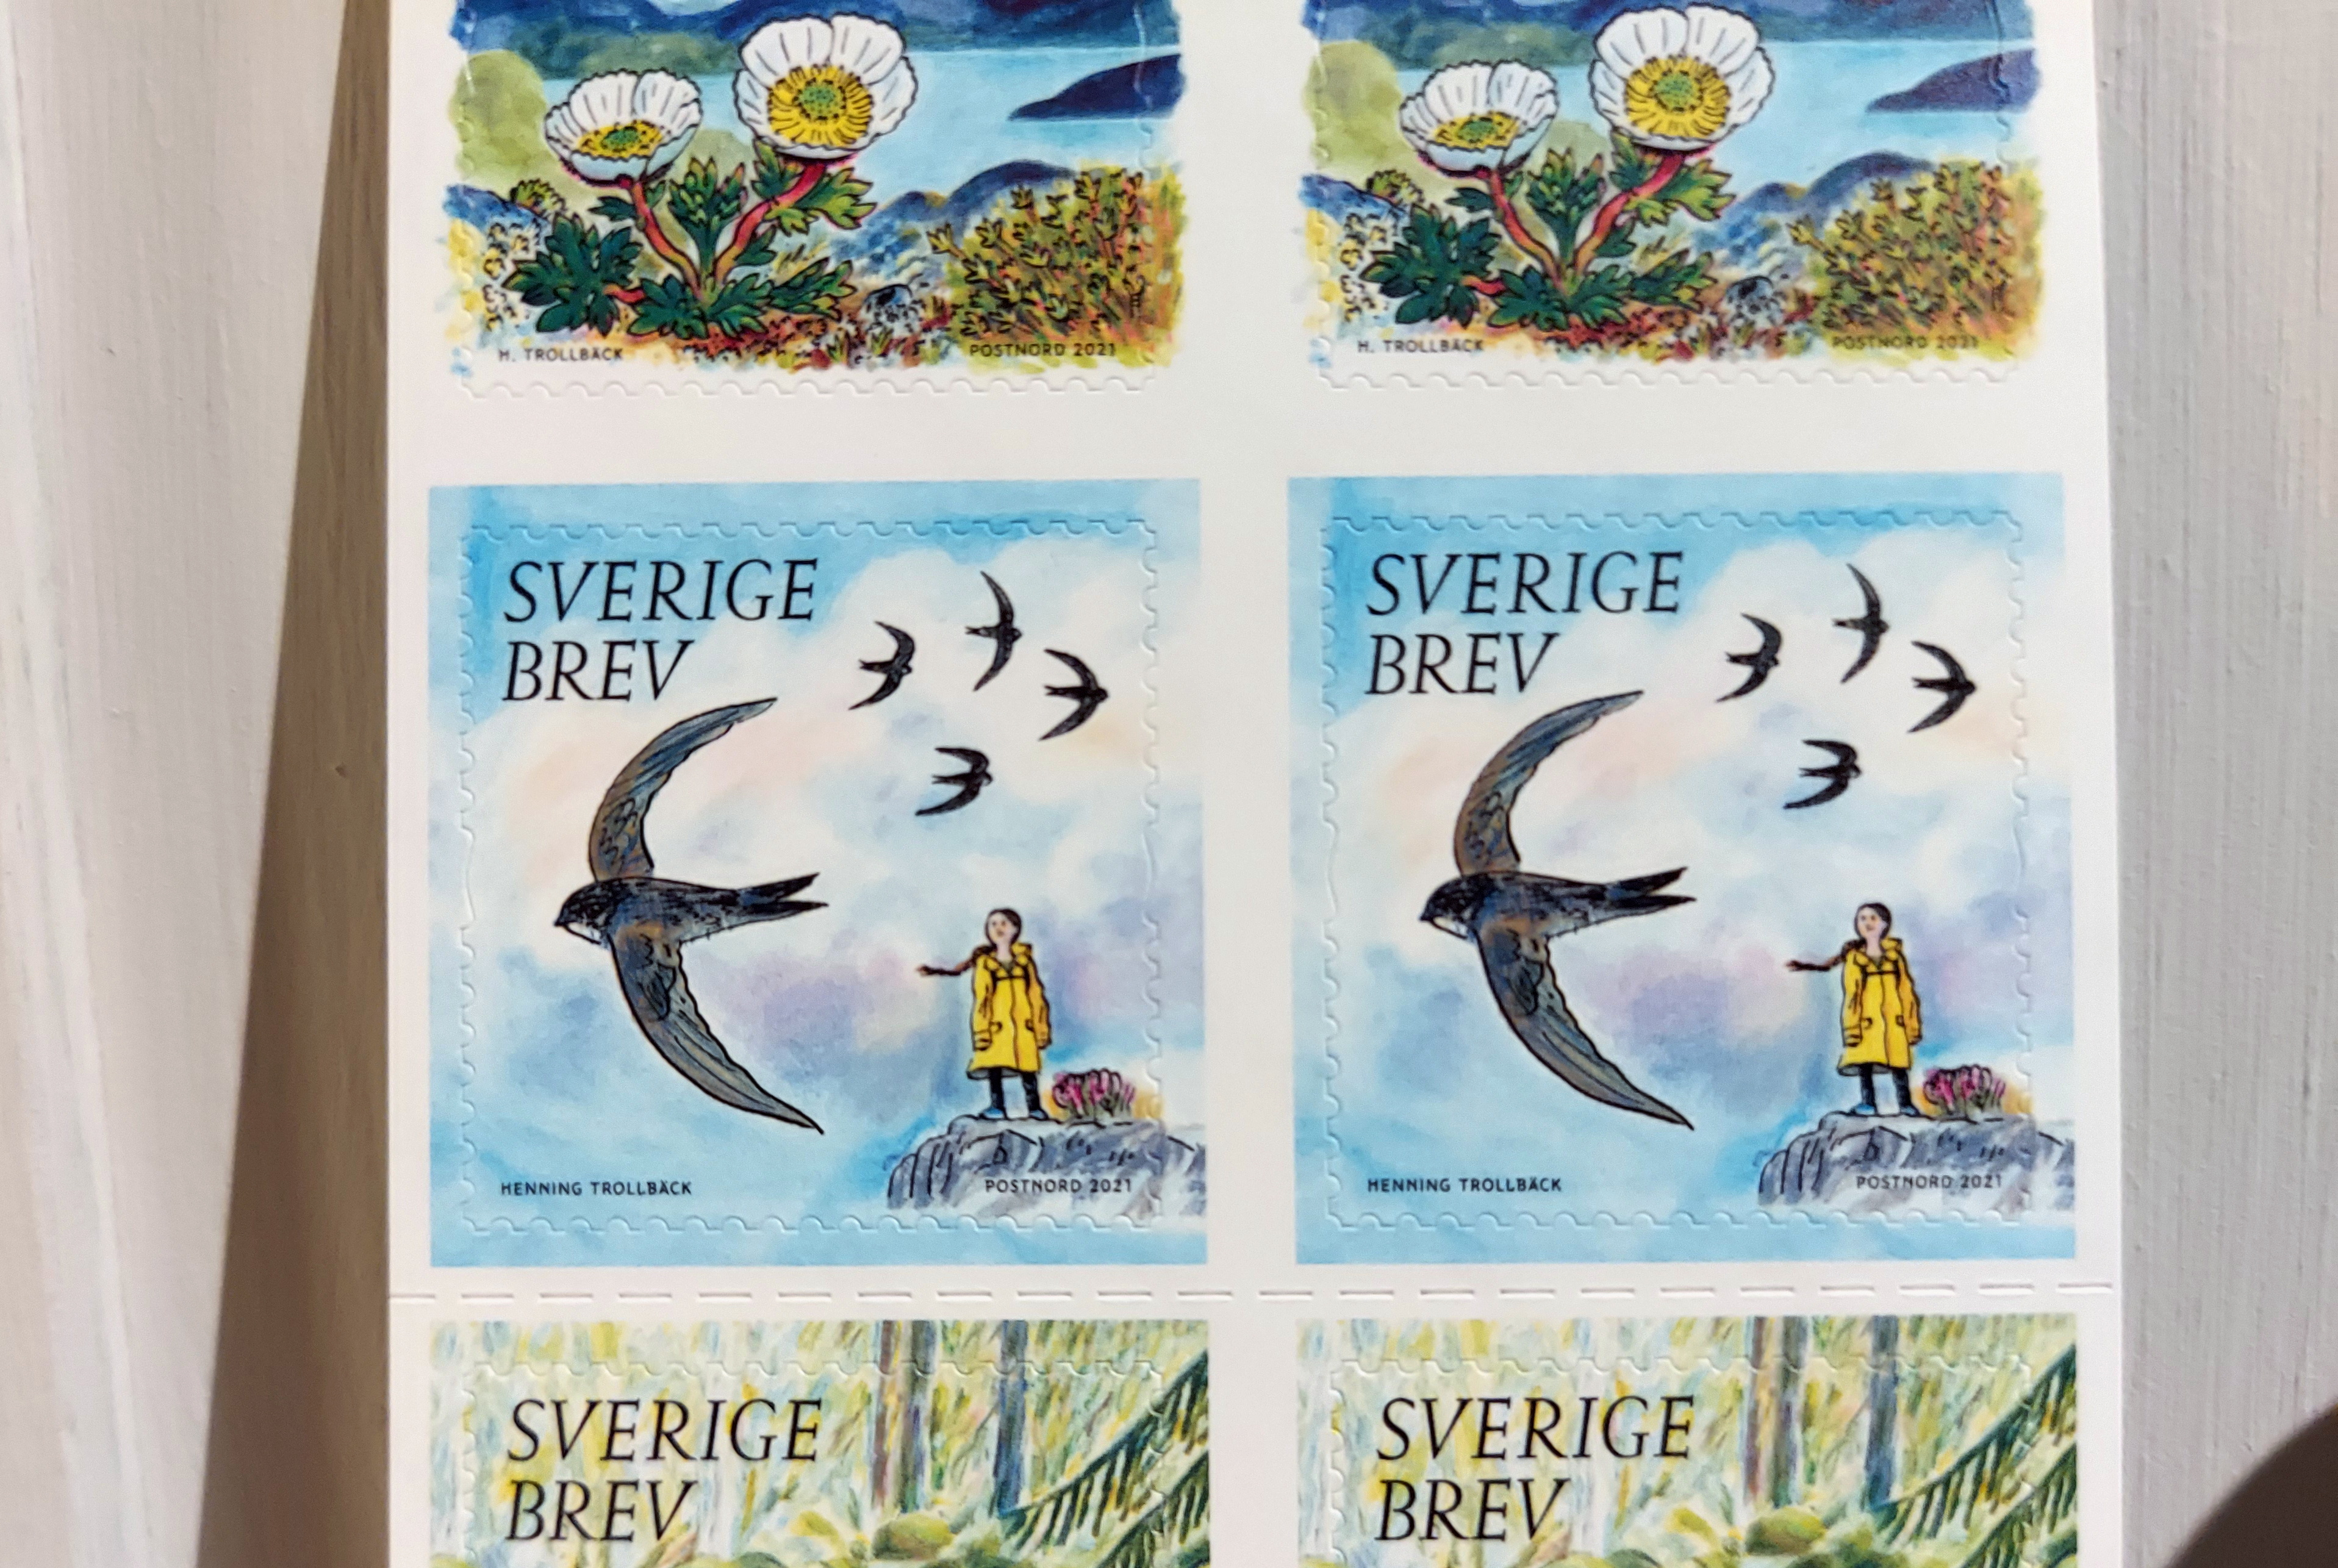 Stamp featuring climate activist Greta Thunberg